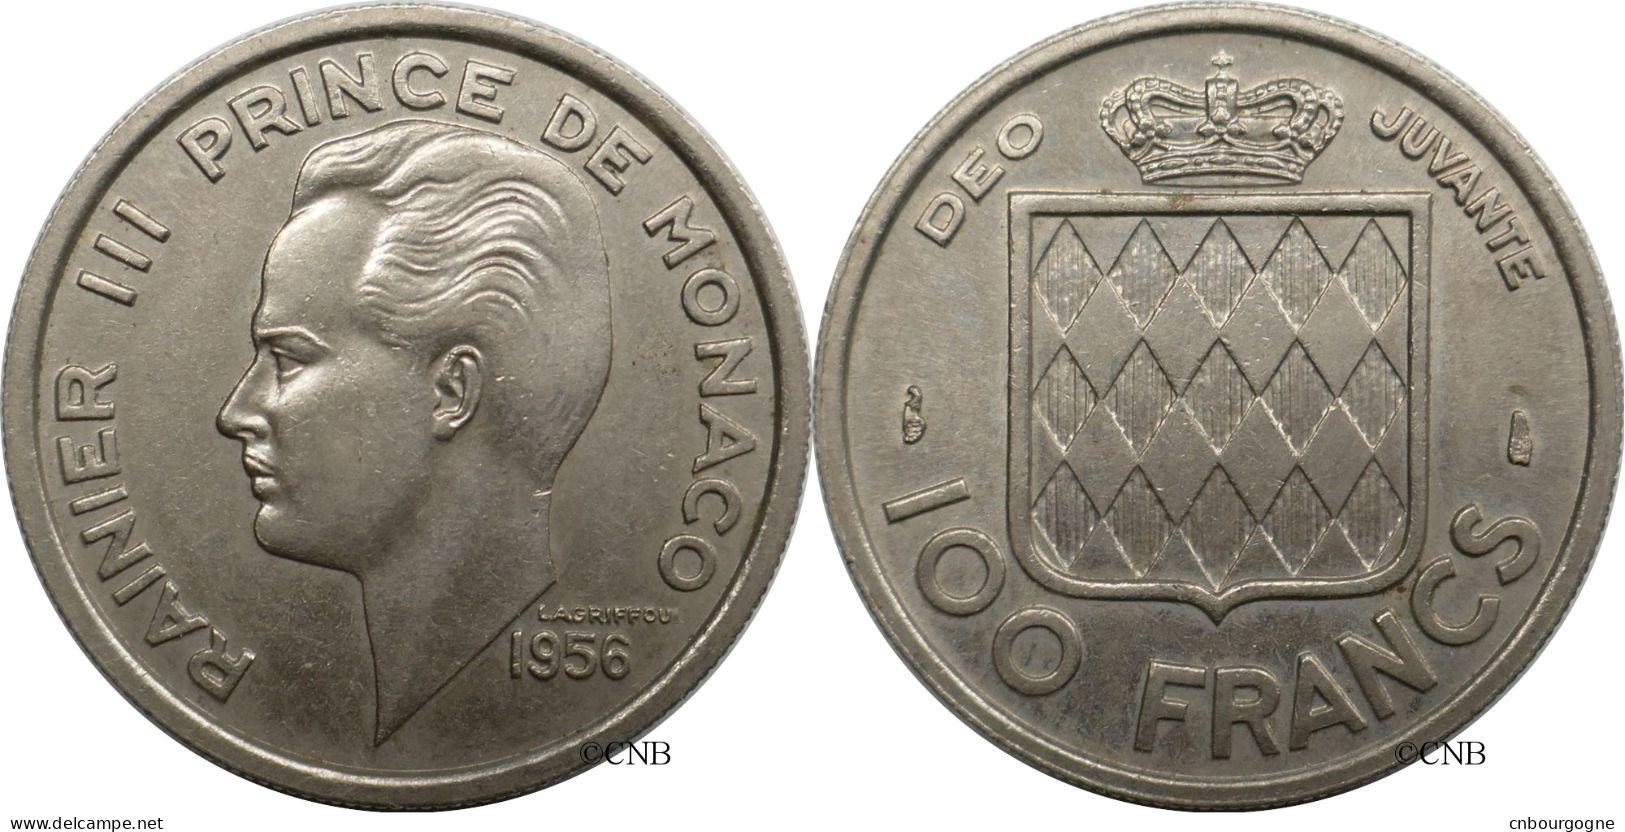 Monaco - Principauté - Rainier III - 100 Francs 1956 - SUP/AU58 - Mon6589 - 1949-1956 Alte Francs